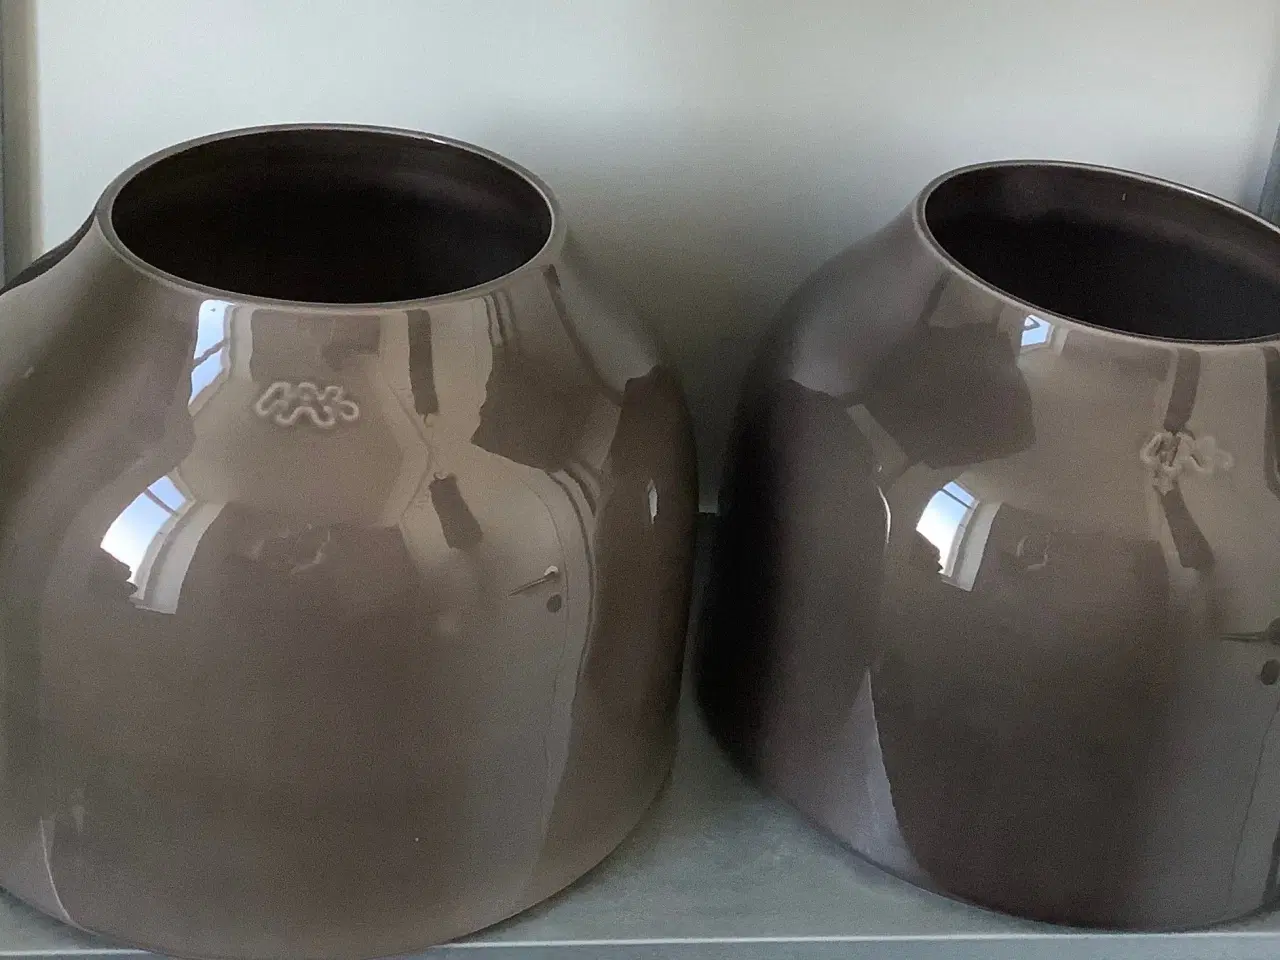 Billede 1 - Kähler potter højde 21 ø 28, pris 2 stk